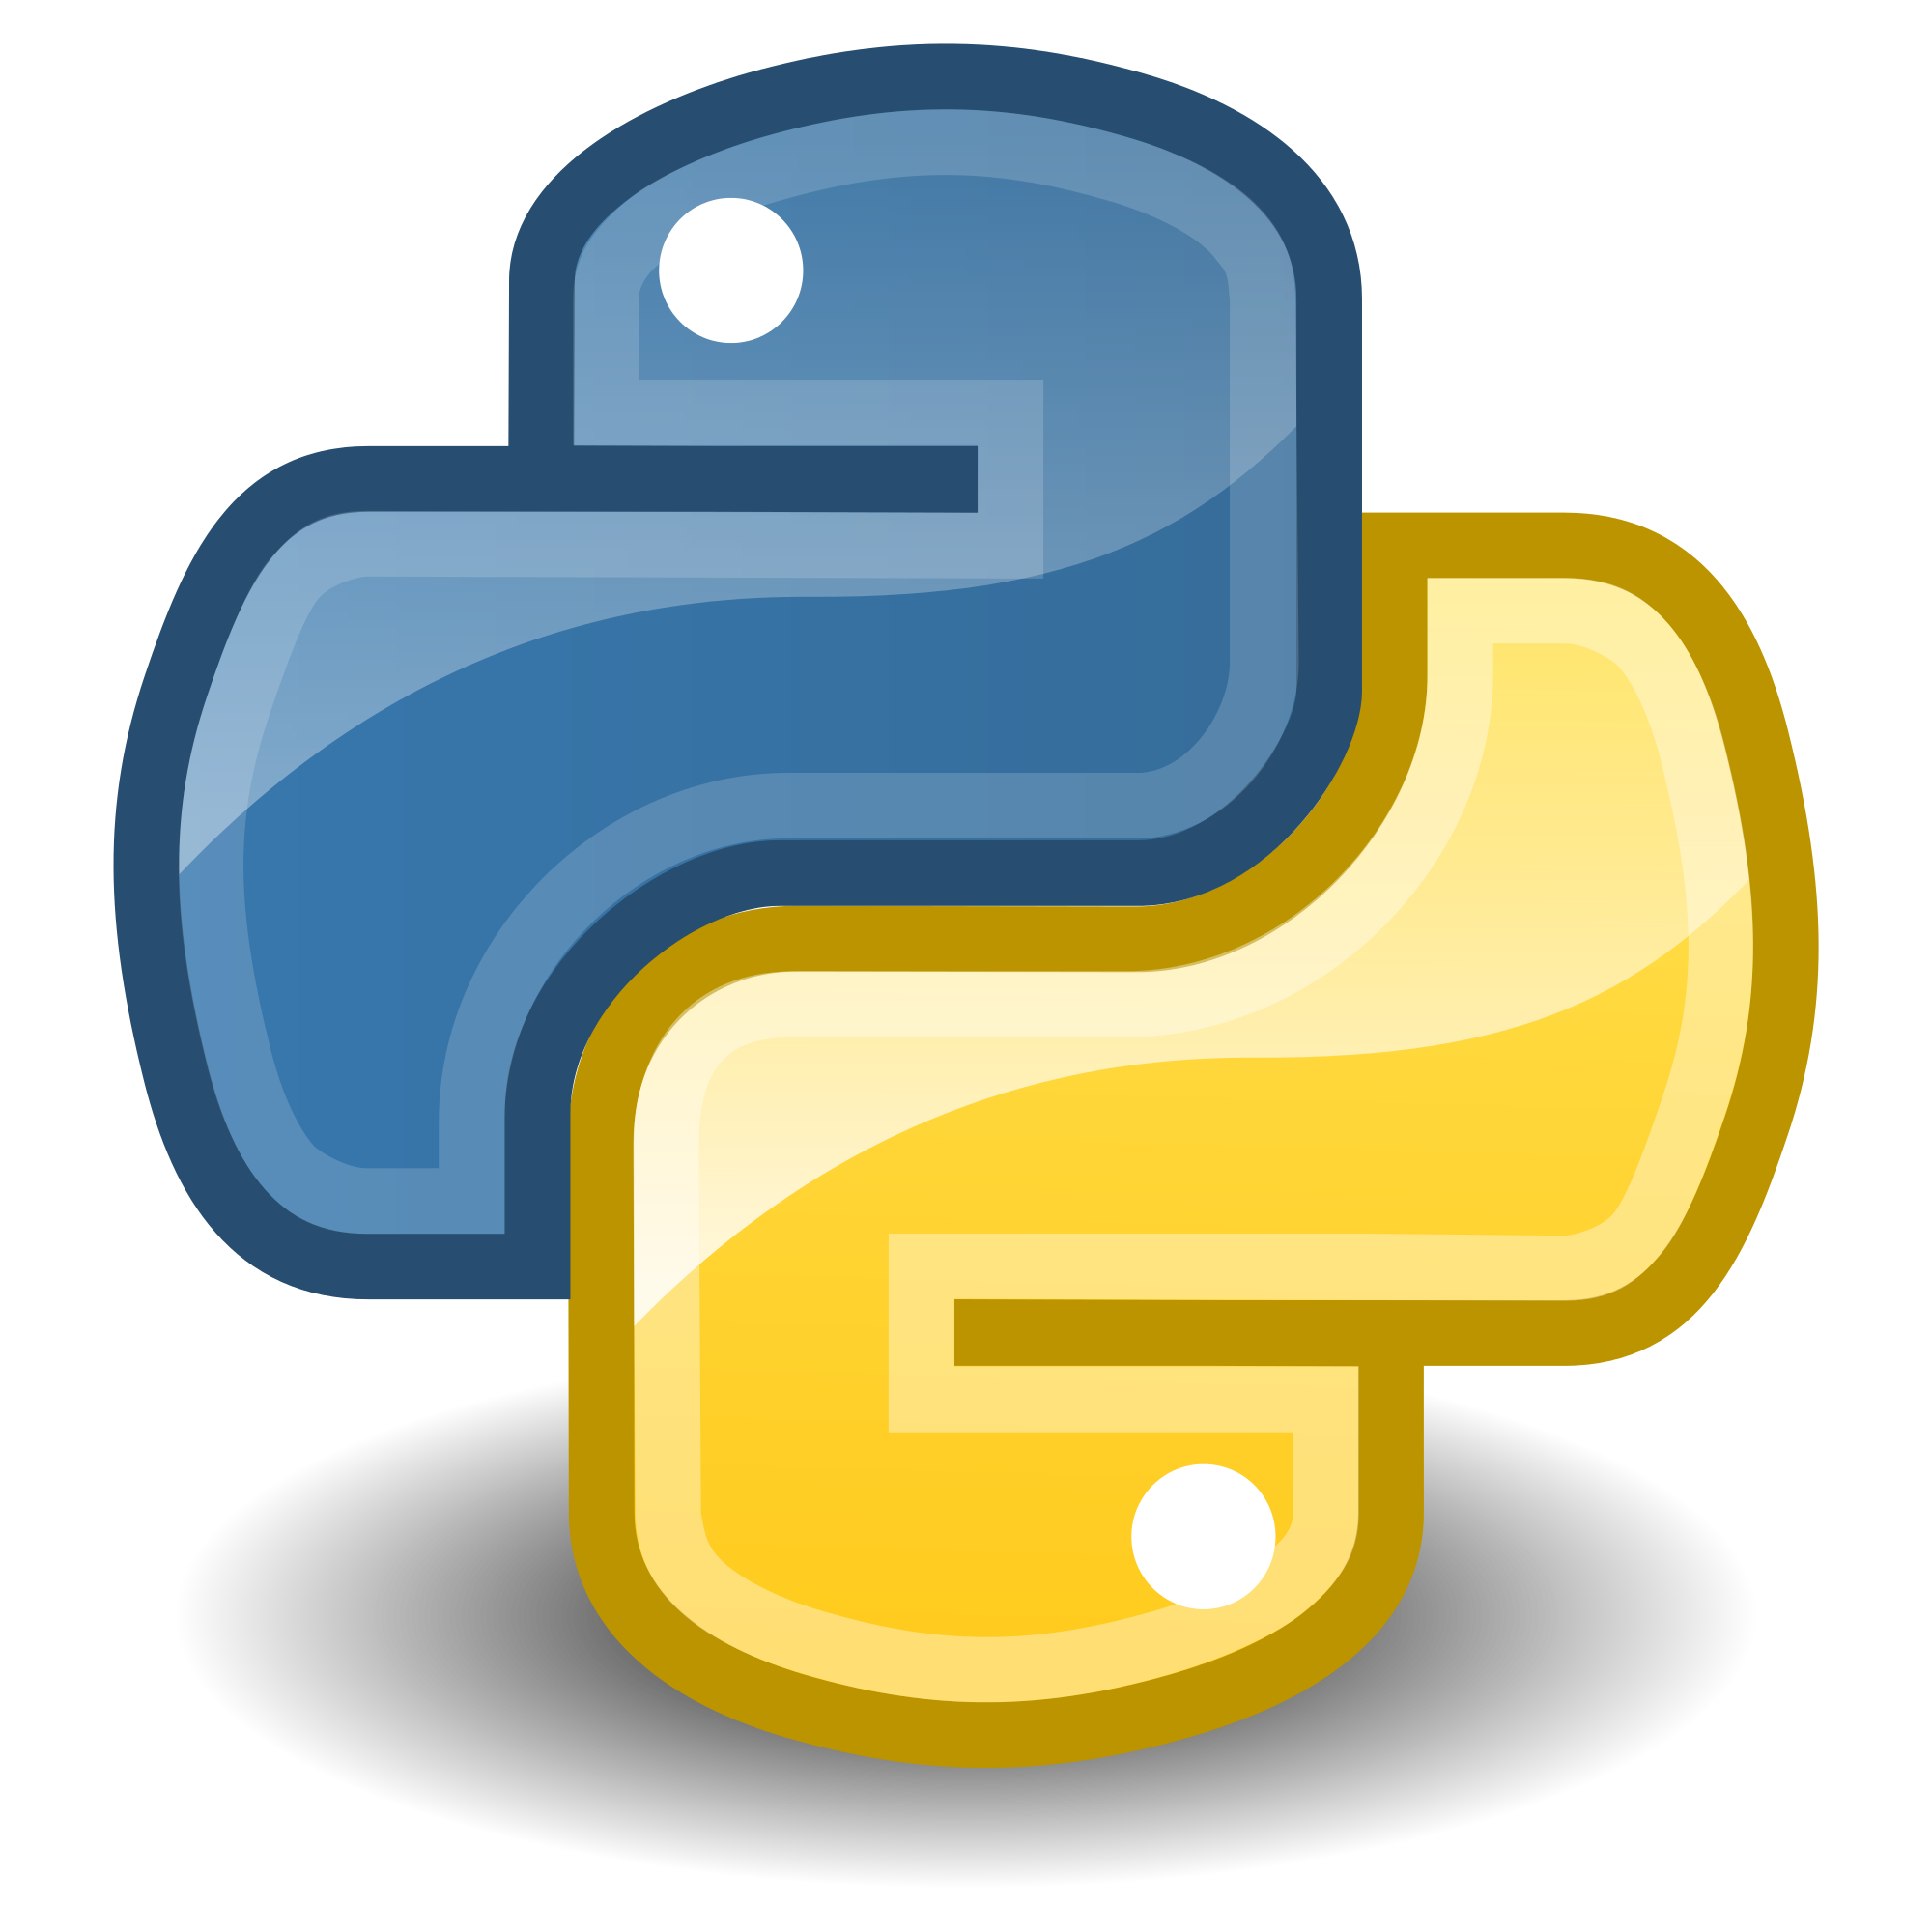 Удав символ. Python лого. Значок питона. Питон язык программирования логотип. Пайтин3.